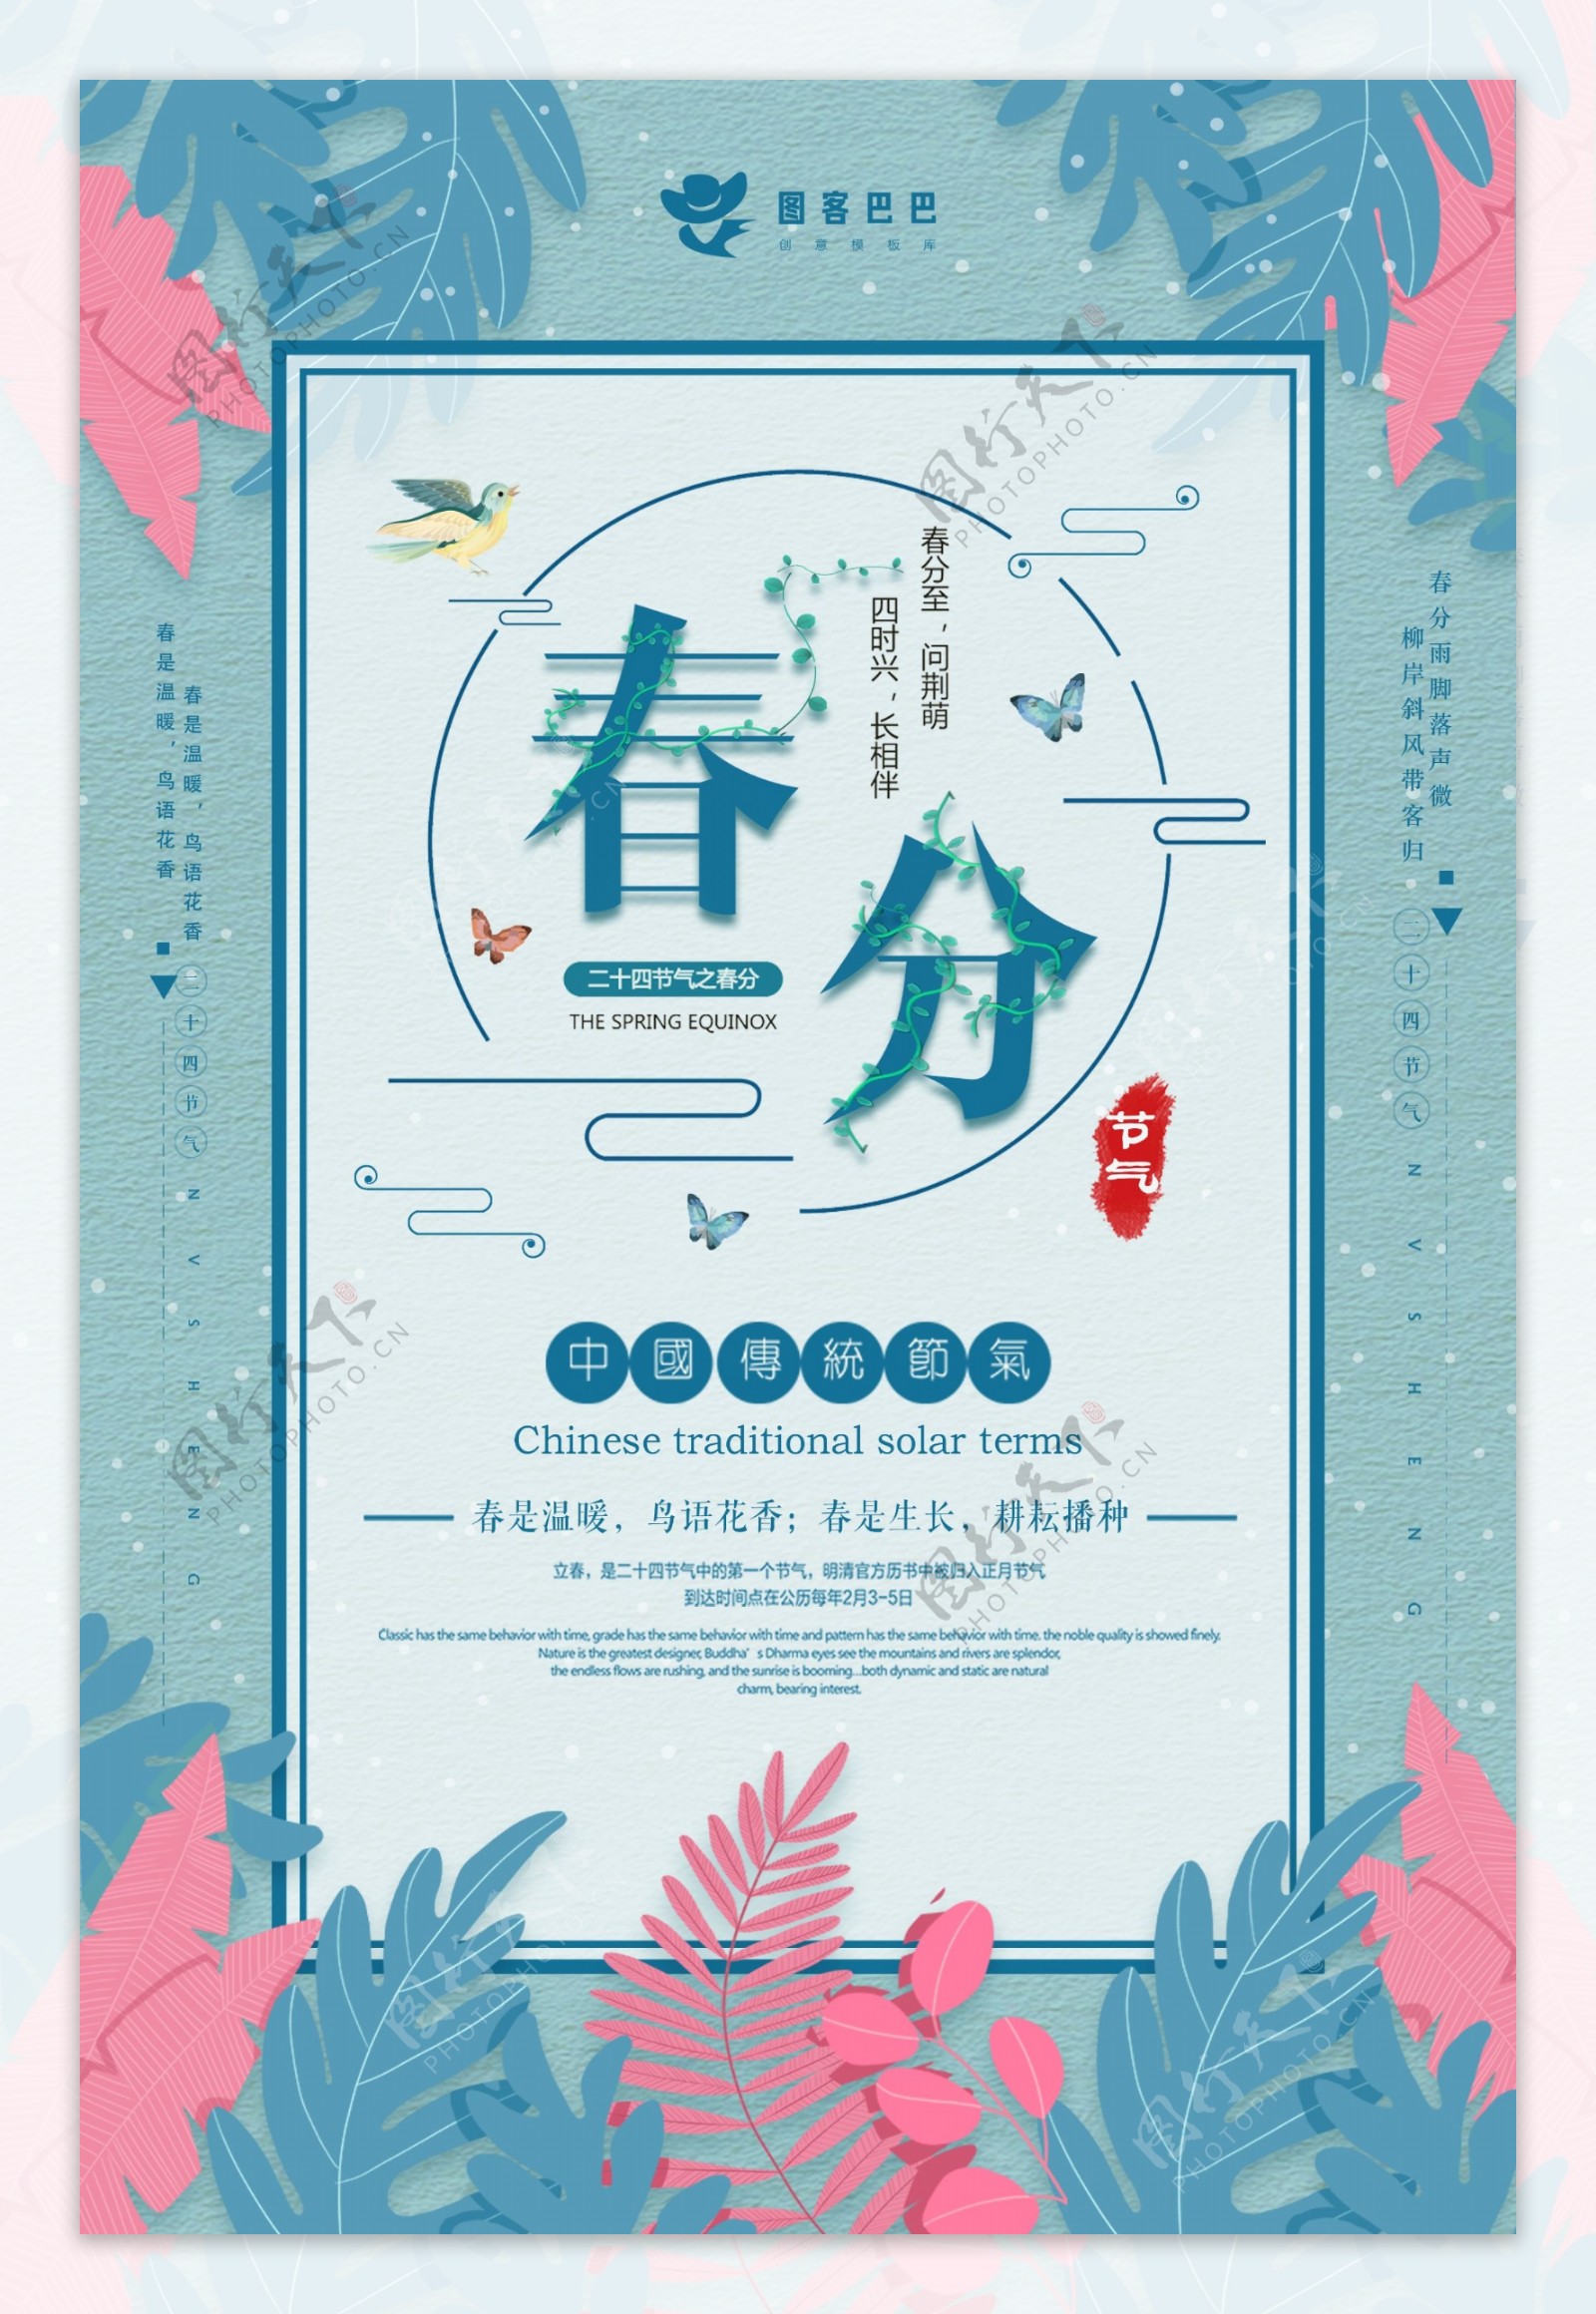 唯美蓝色春分节气节日海报设计